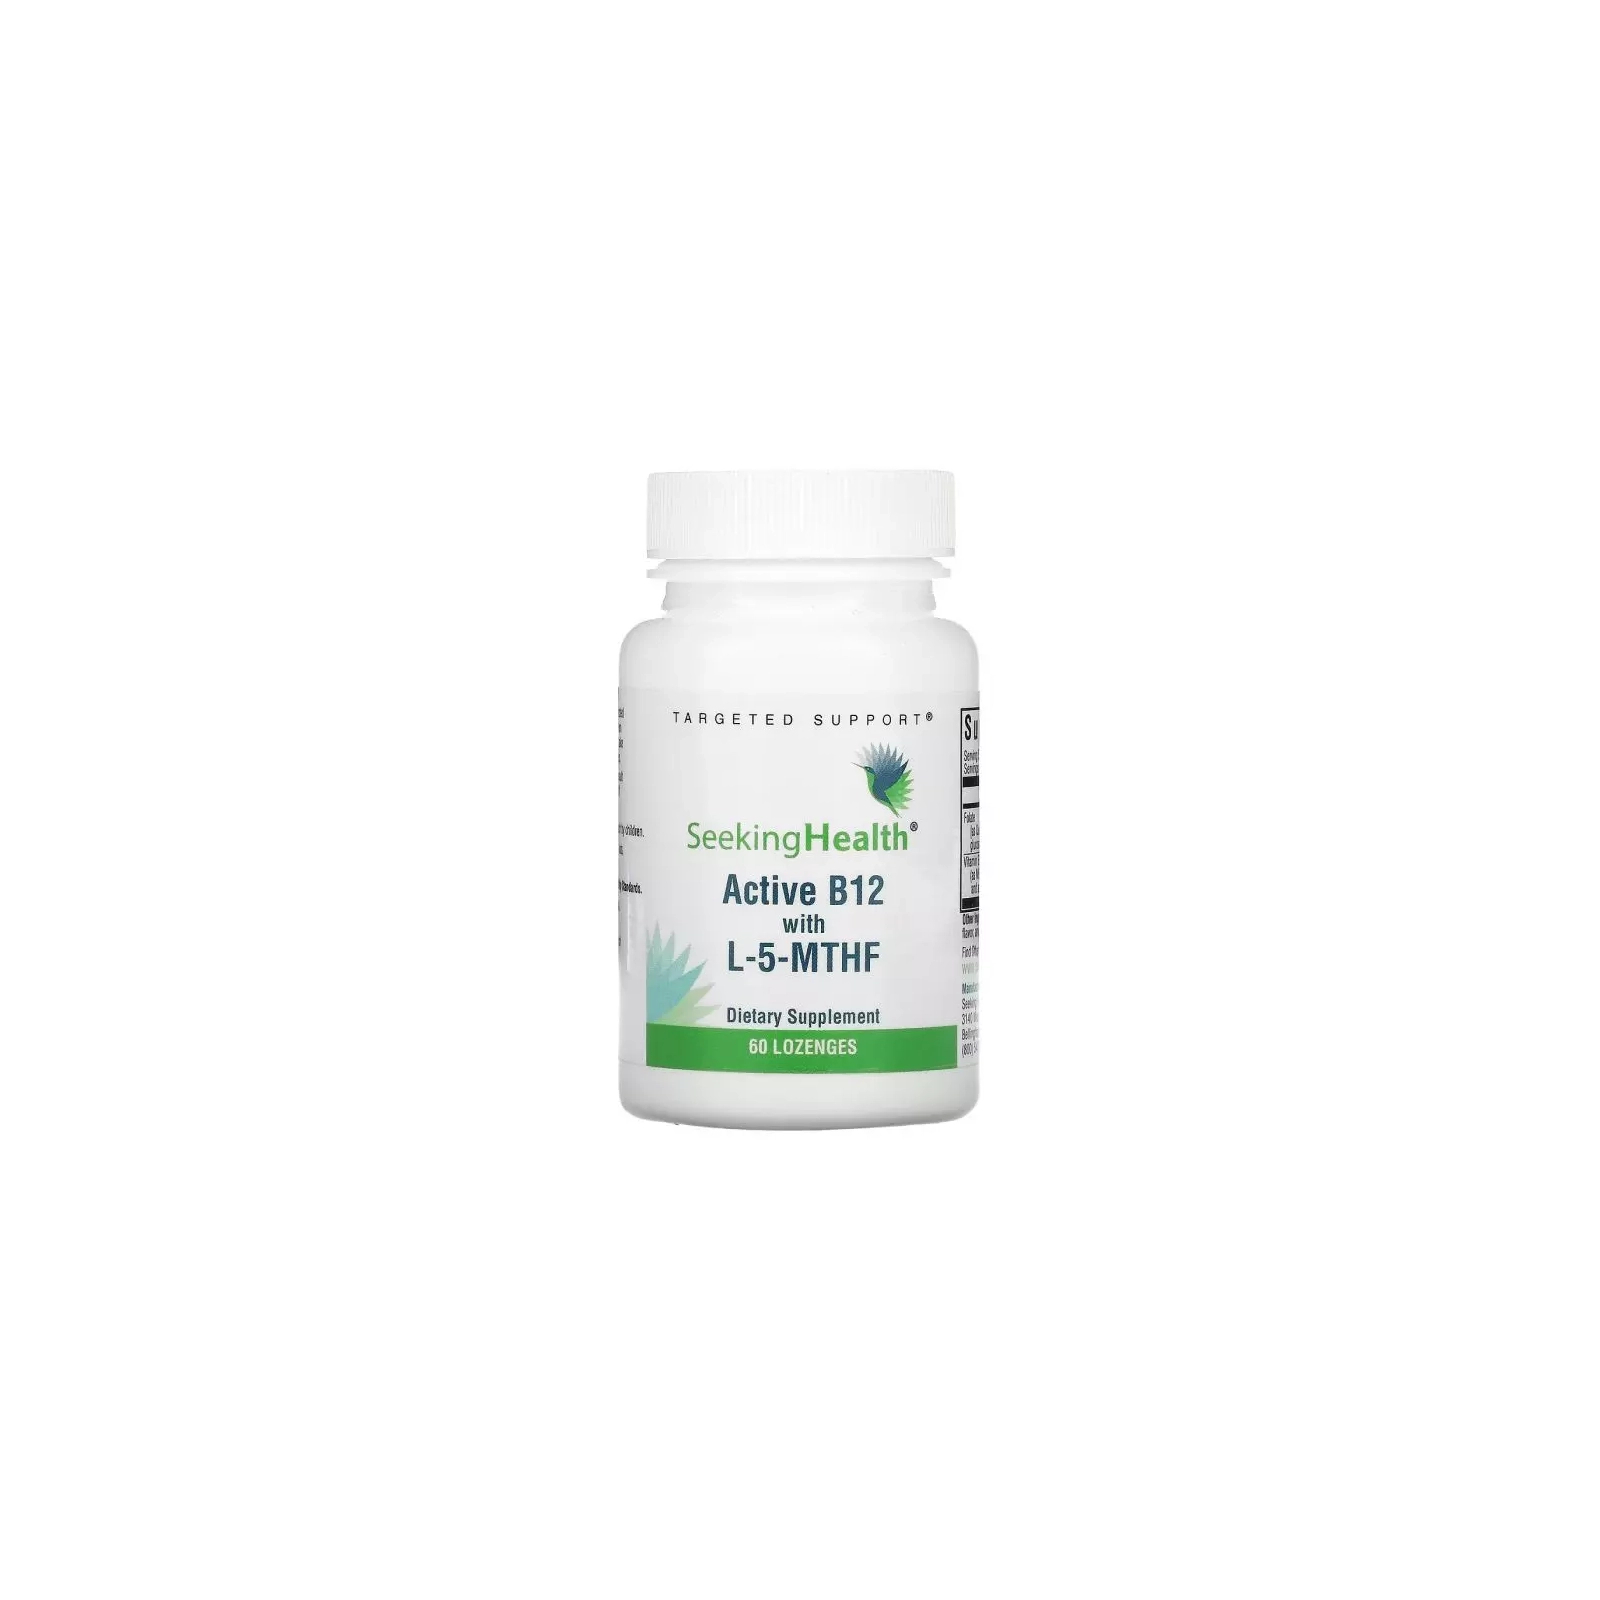 Витаминно-минеральный комплекс Seeking Health Витамин B12 с L-5-MTHF, вкус вишни, Active B12 With L-5-MTHF, 60 жеватель (SKH-52006)